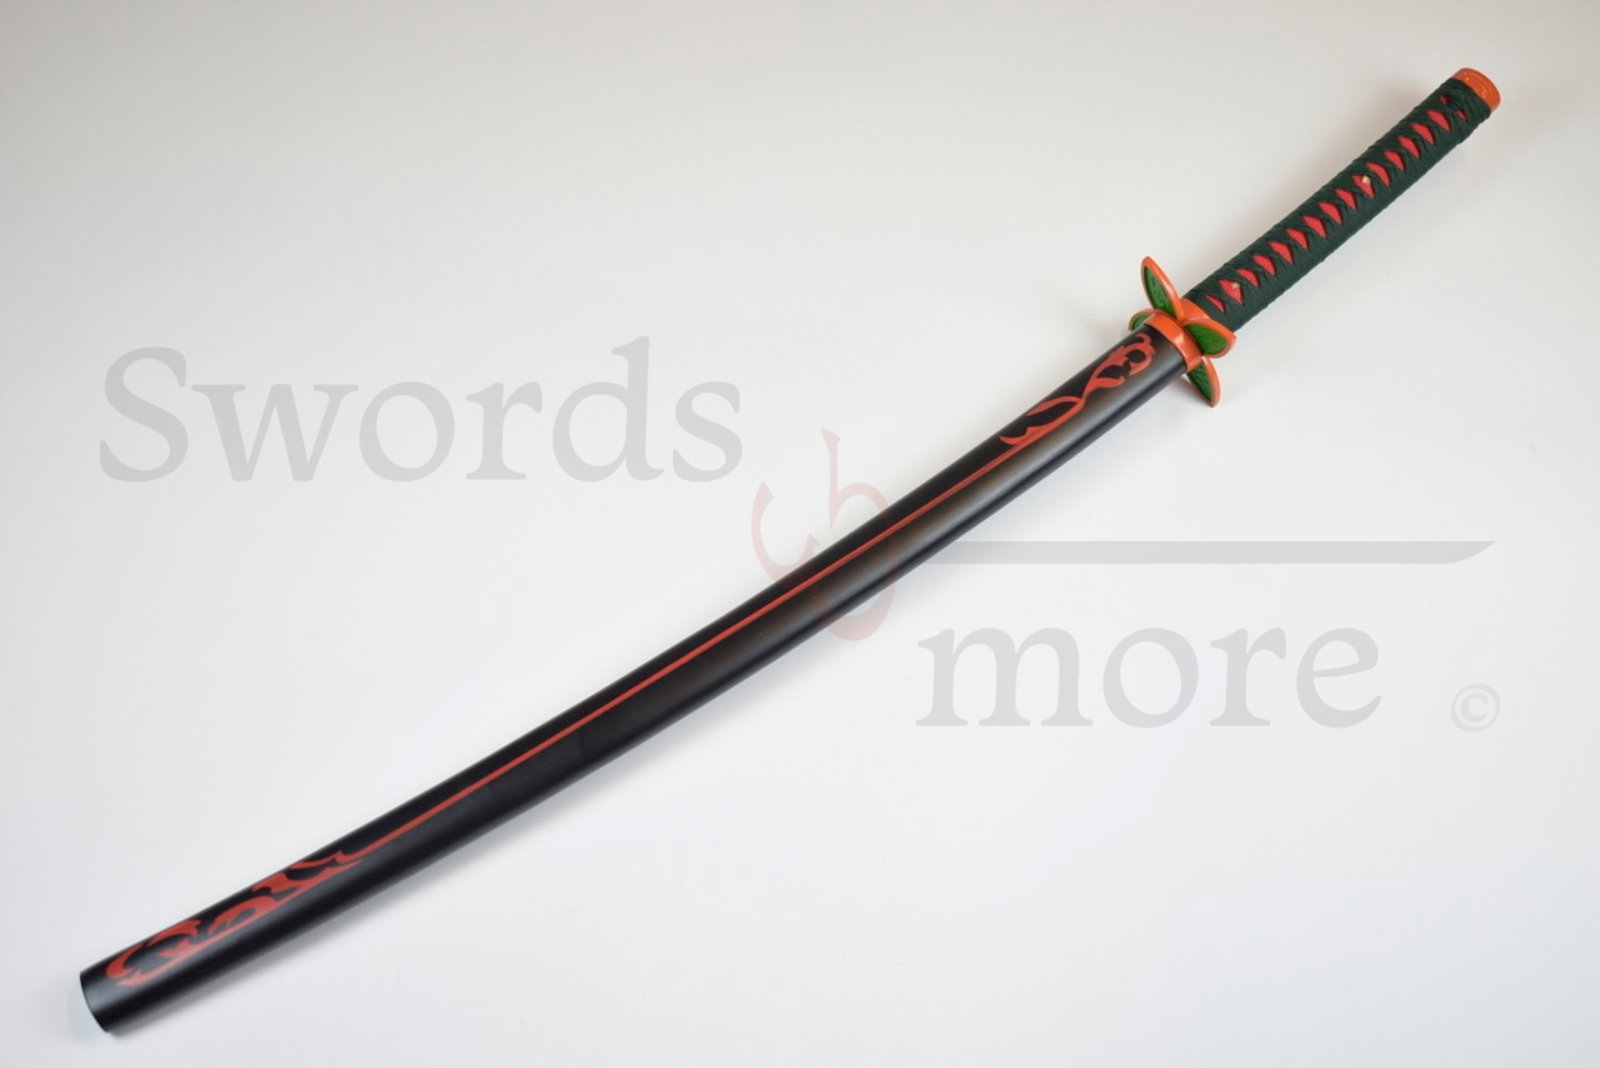 Demon Slayer: Kimetsu no Yaiba - Kochou Shinobu's Sword - handforged and folded, Set